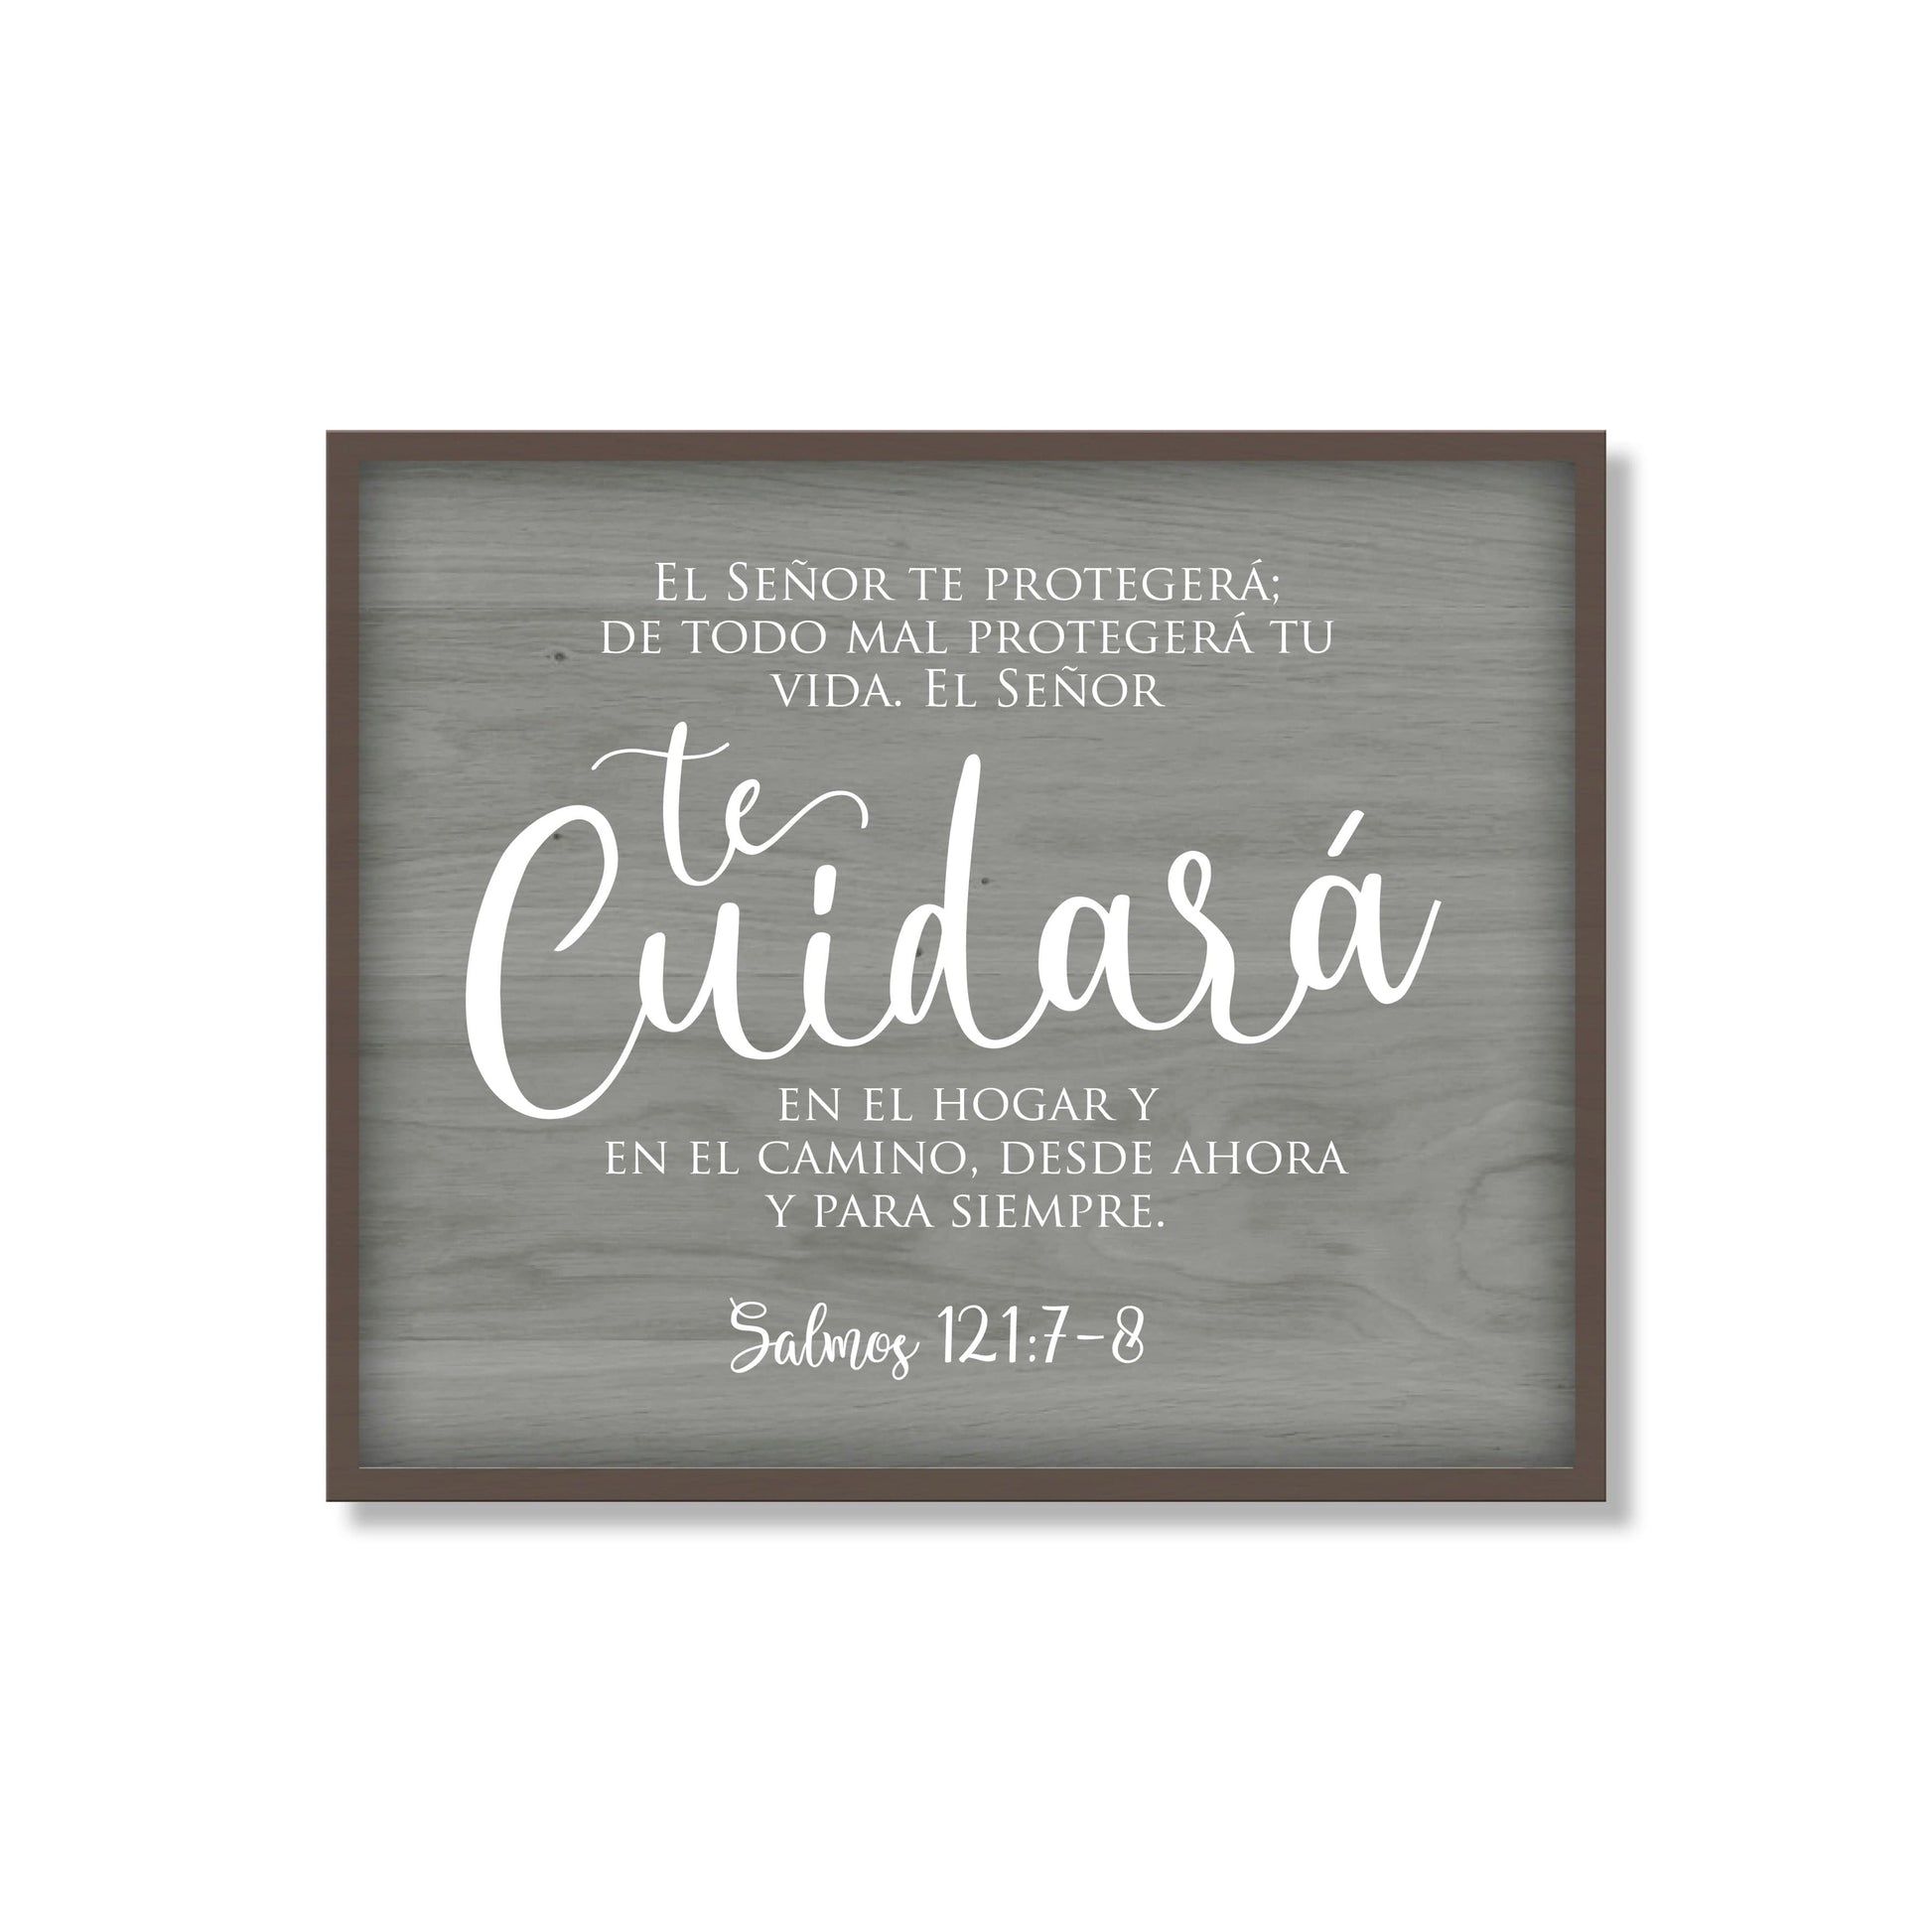 Cuadro Blackboard - Te Cuidara - The Perfect Gift